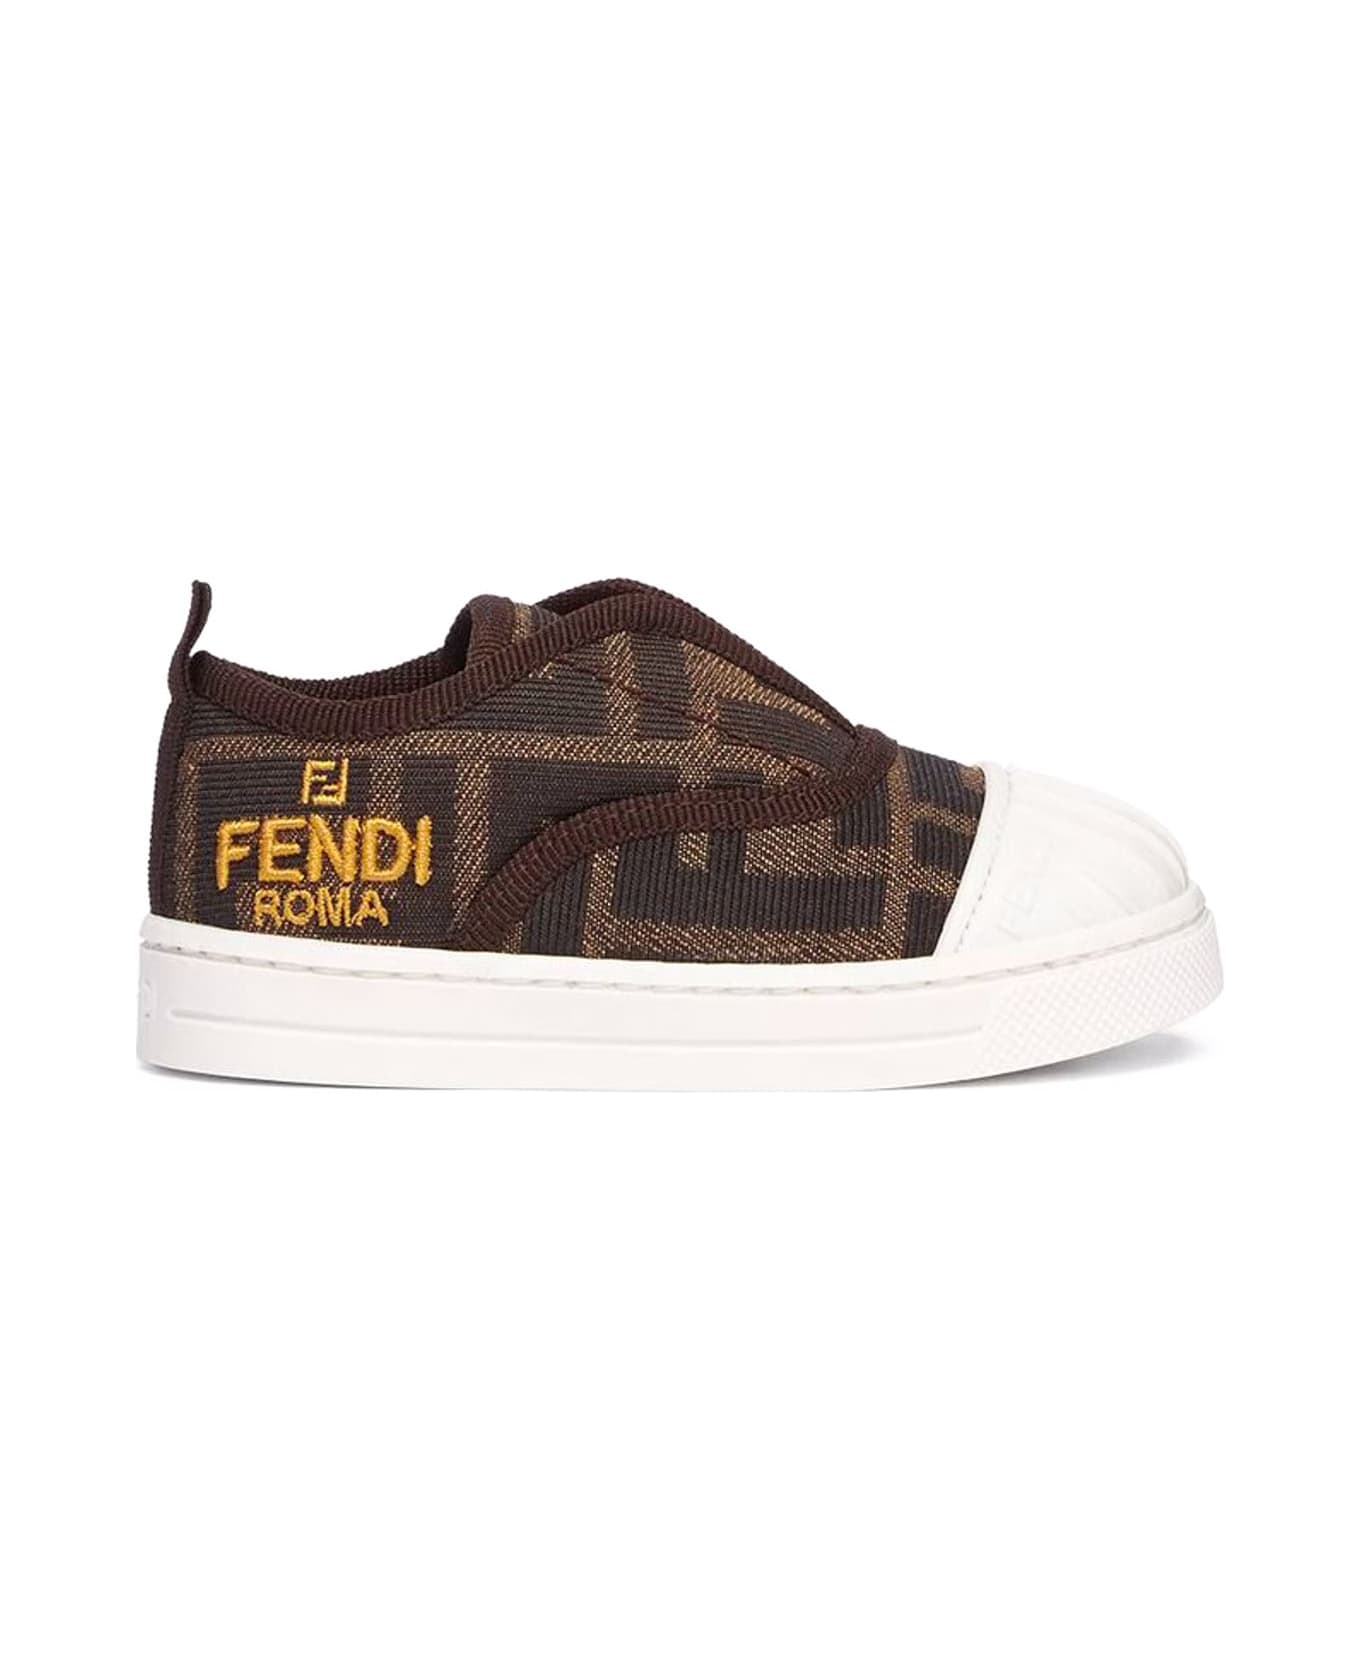 Fendi Kids Sneakers Brown - Brown